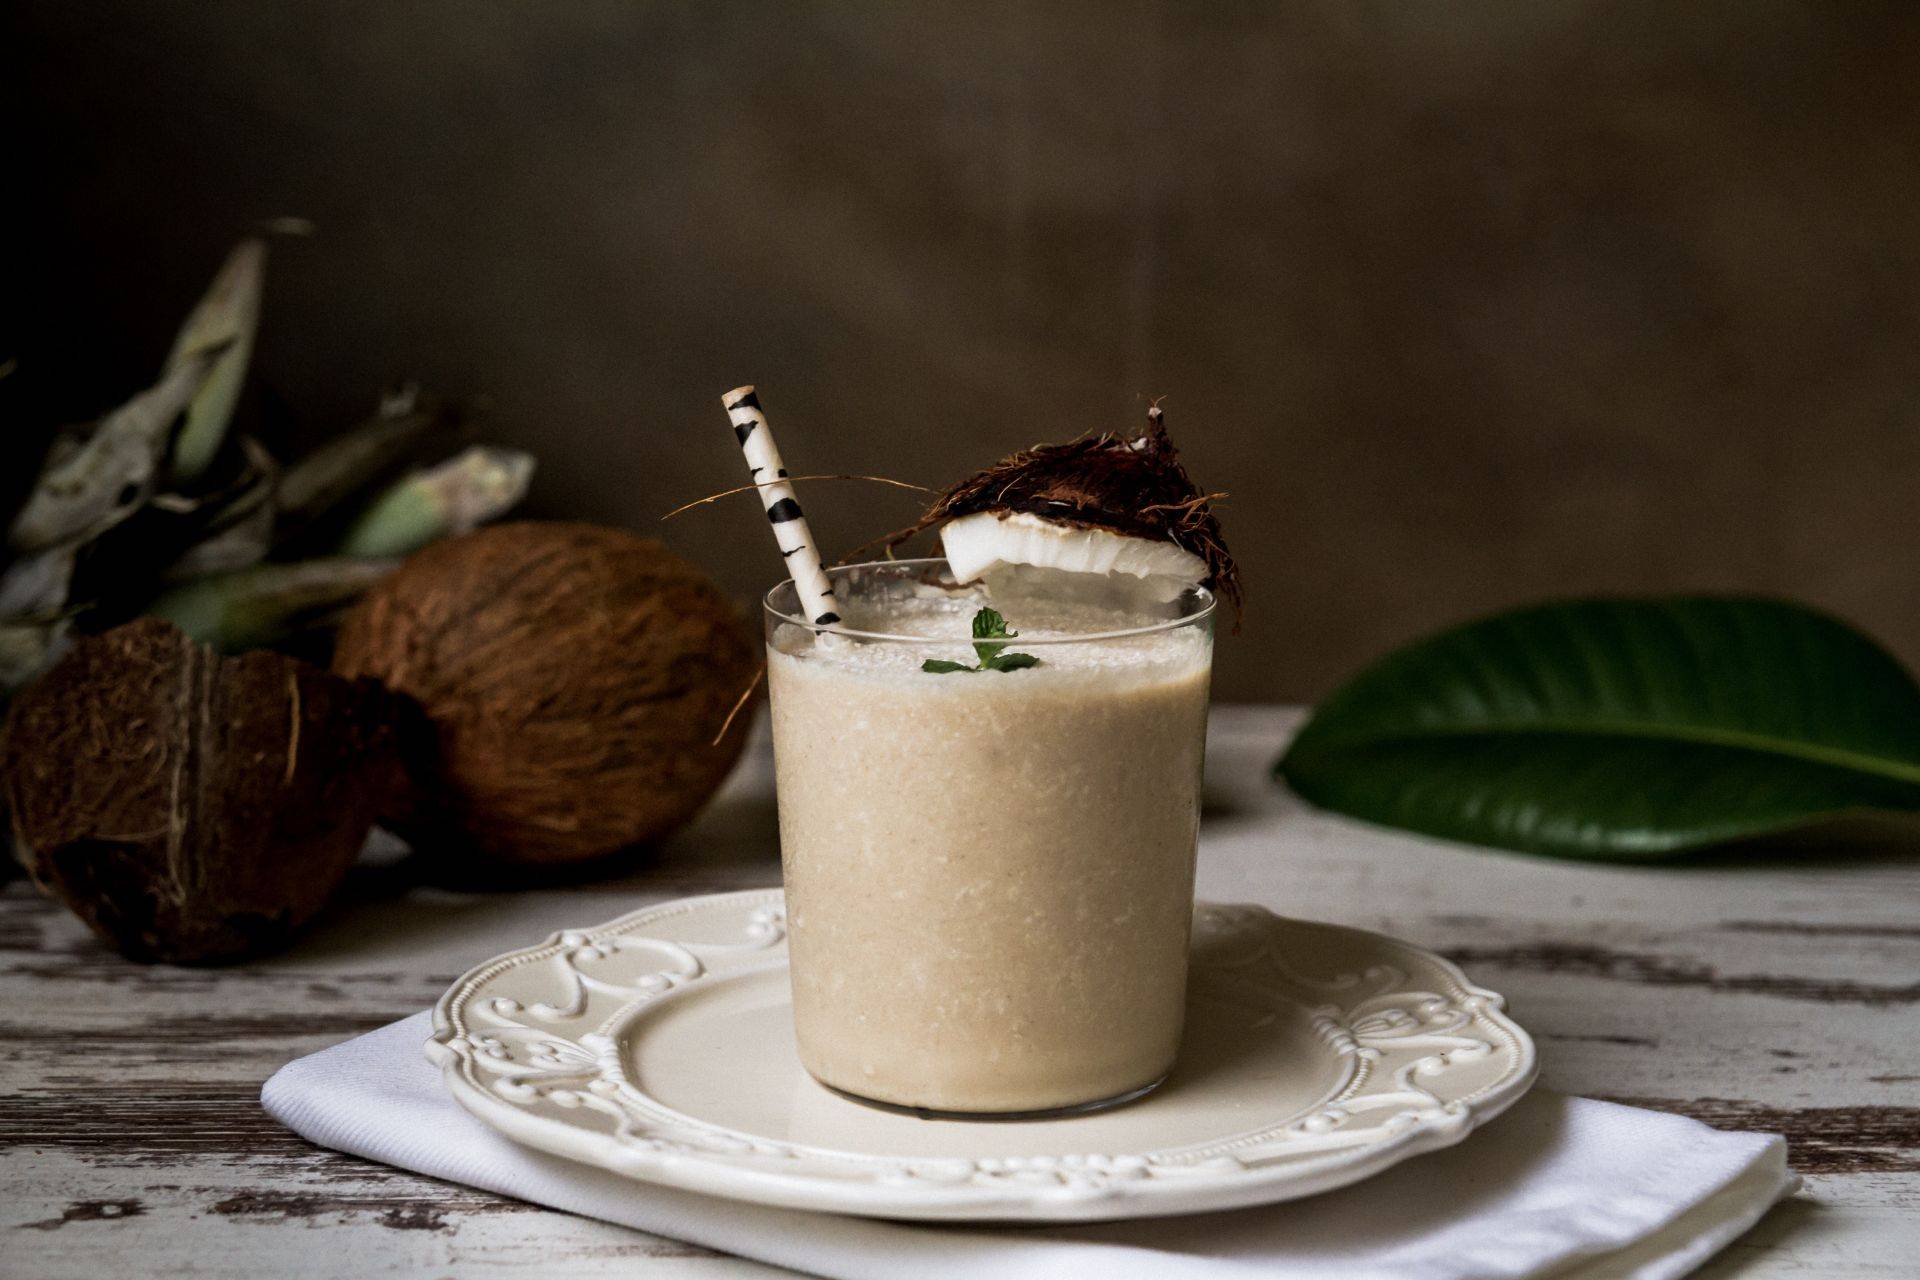 Кофе с кокосовым молоком: рецепты, калорийность, польза и вред